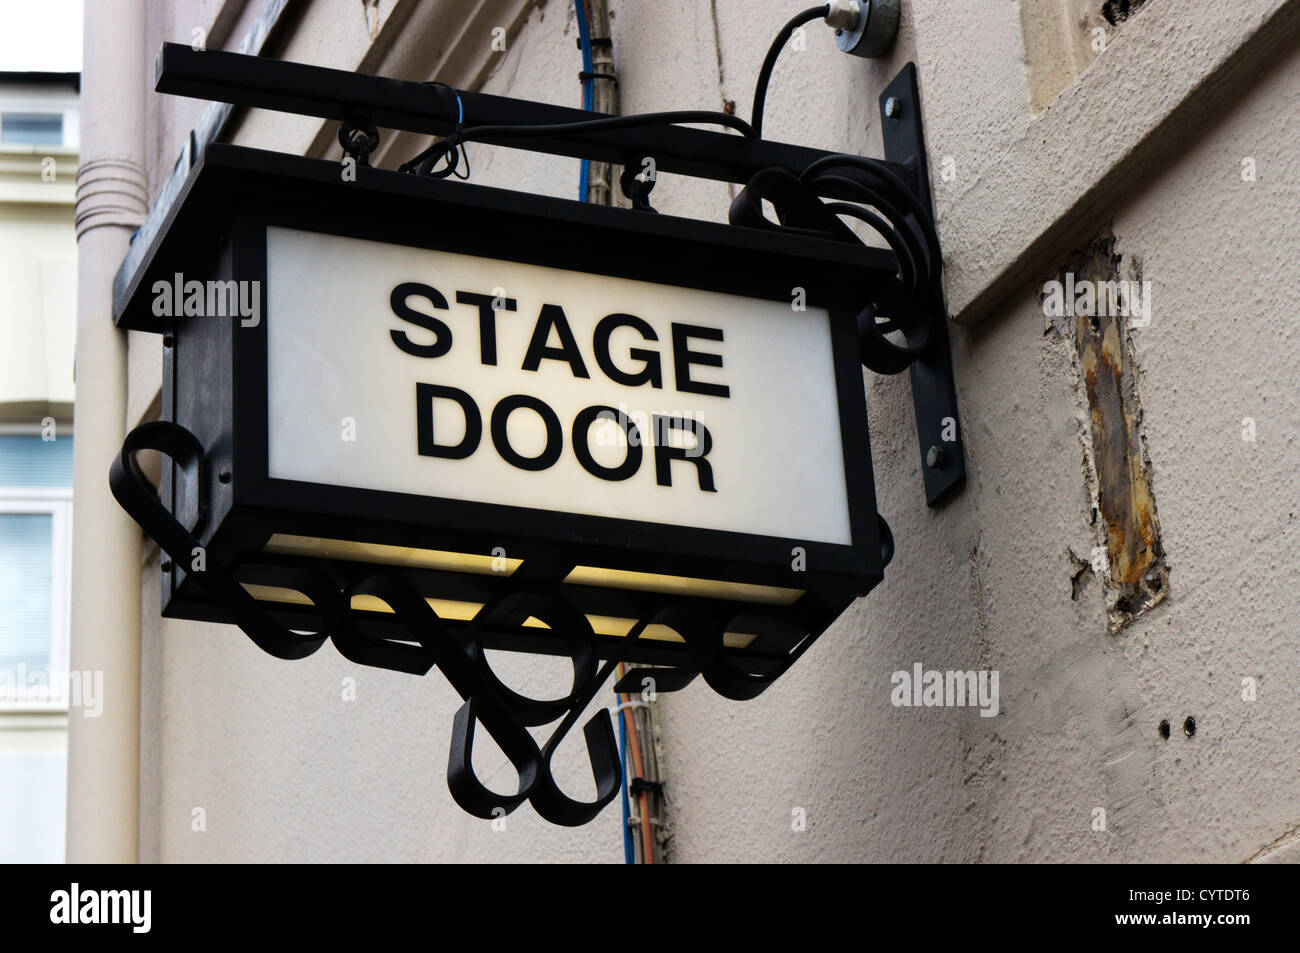 Stage Door Schild außerhalb St. Martin Theatre, London.  Recht vor Zeichen finden Sie unter CXTAX7. Stockfoto